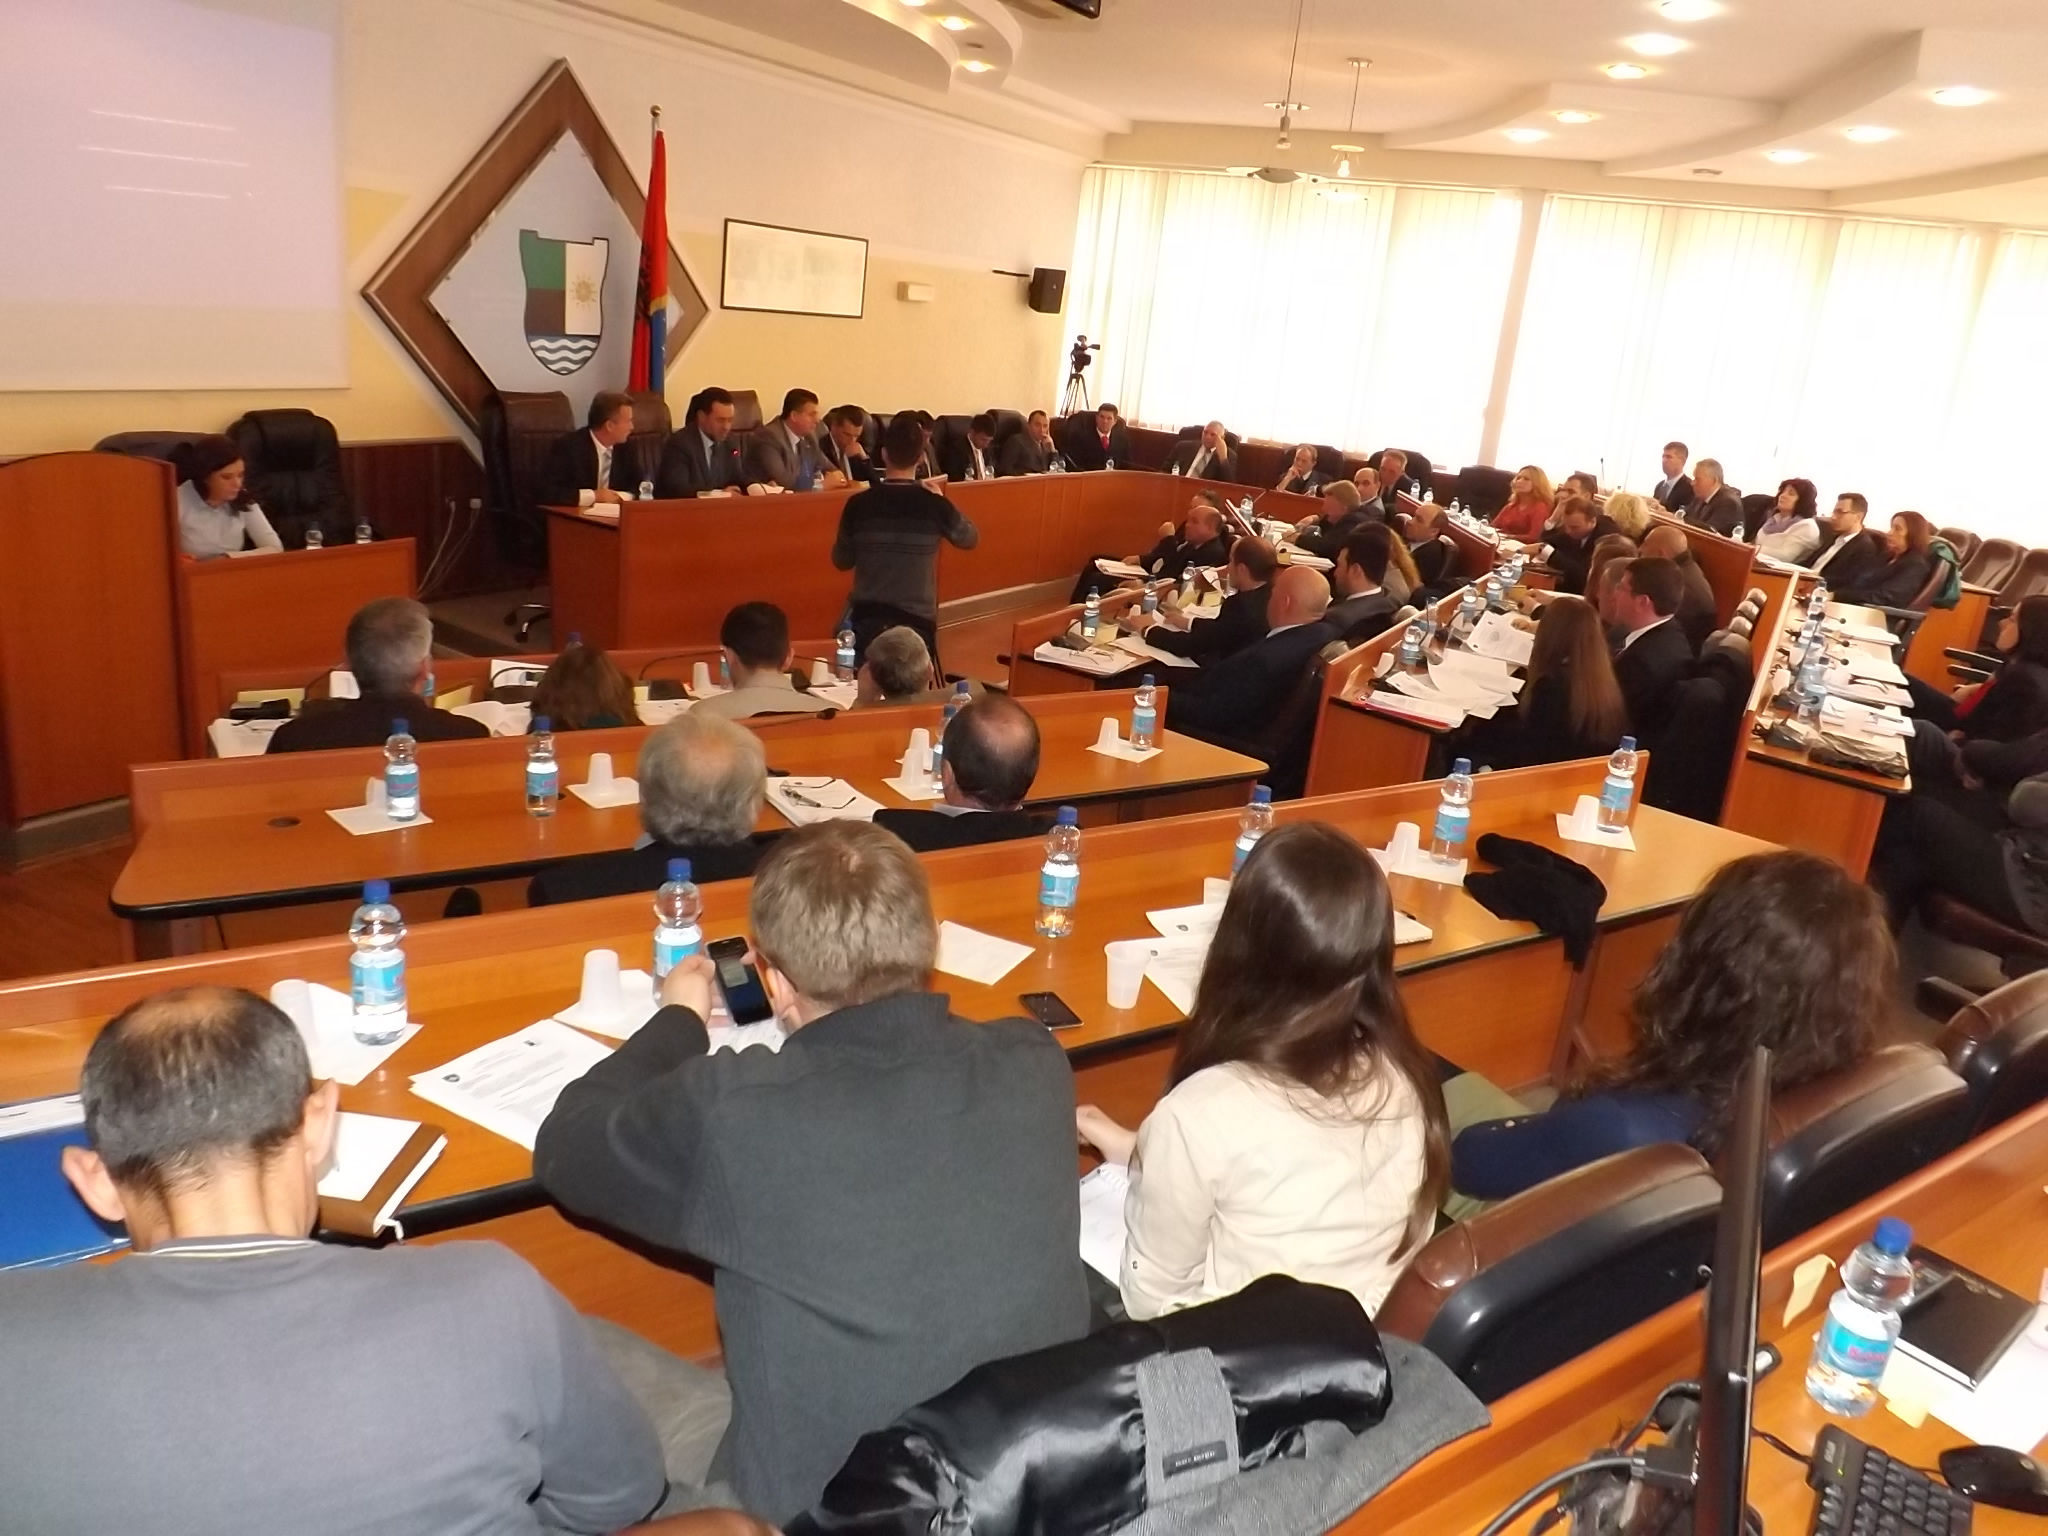 U shkarkua kryesuesi i kuvendit komunal të Mitrovicës